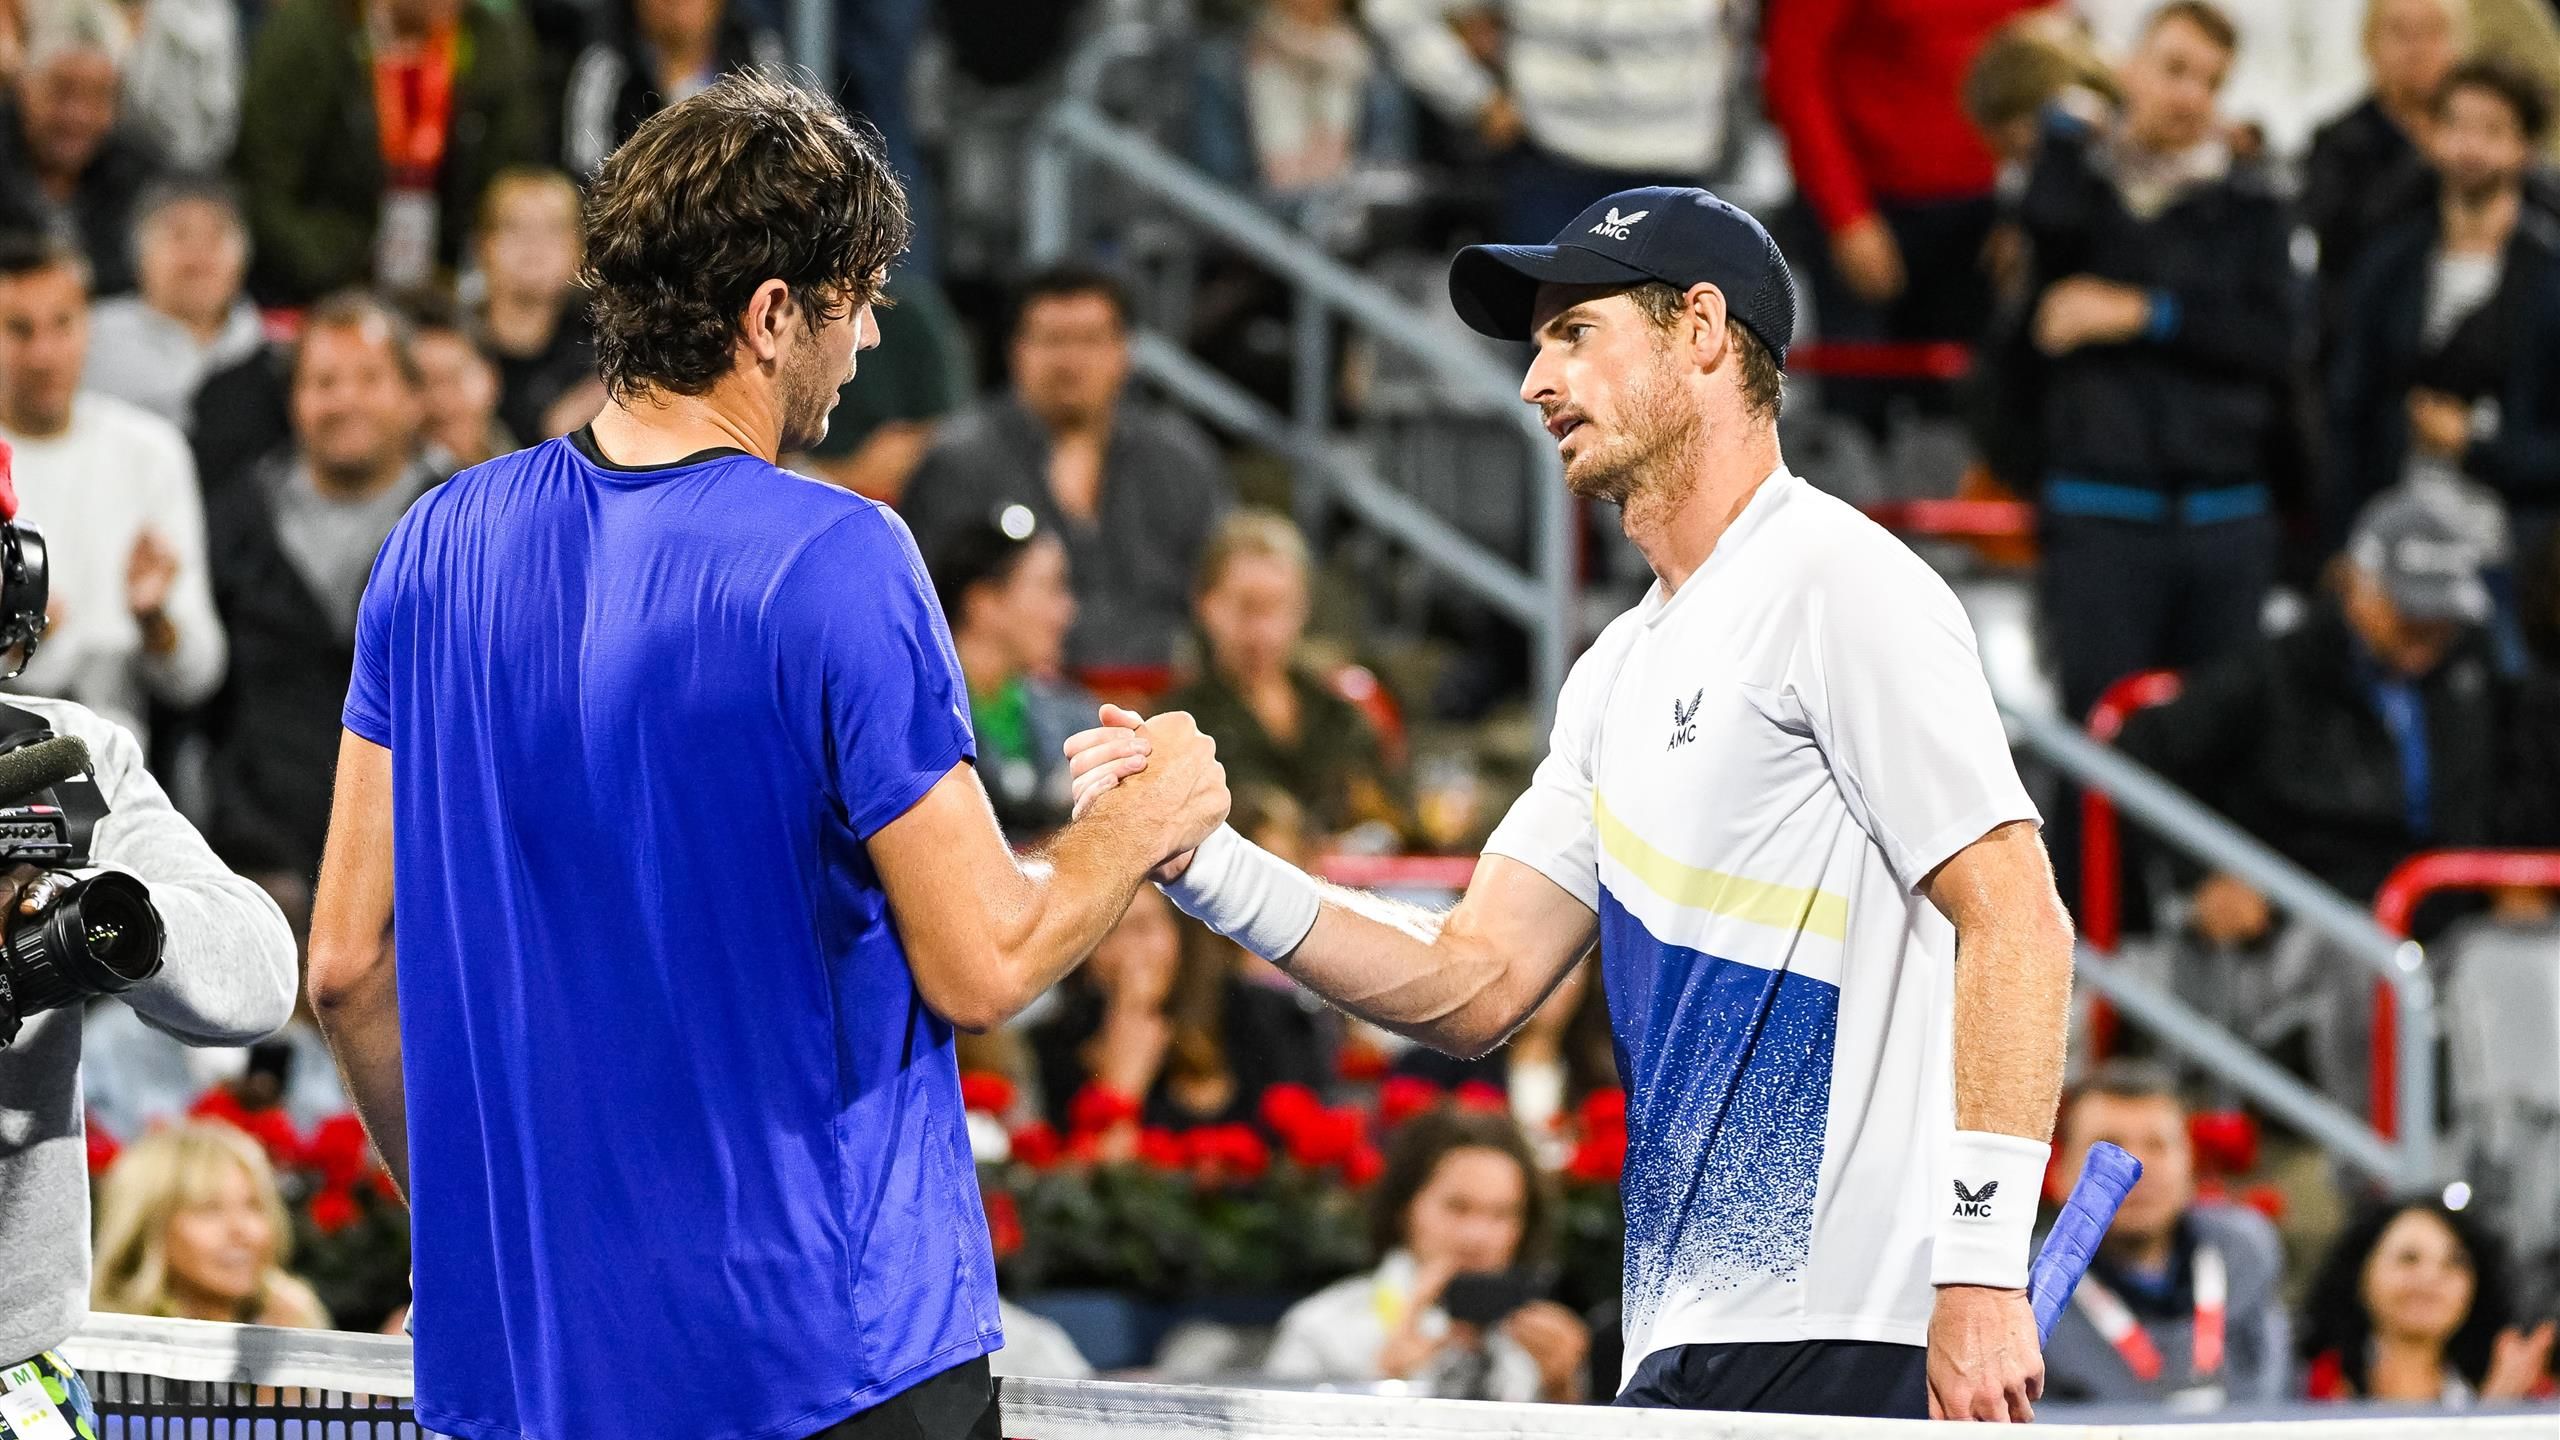 ATP Montreal Andy Murray kassiert deutliche Niederlage gegen Taylor Fritz - Tennis Video